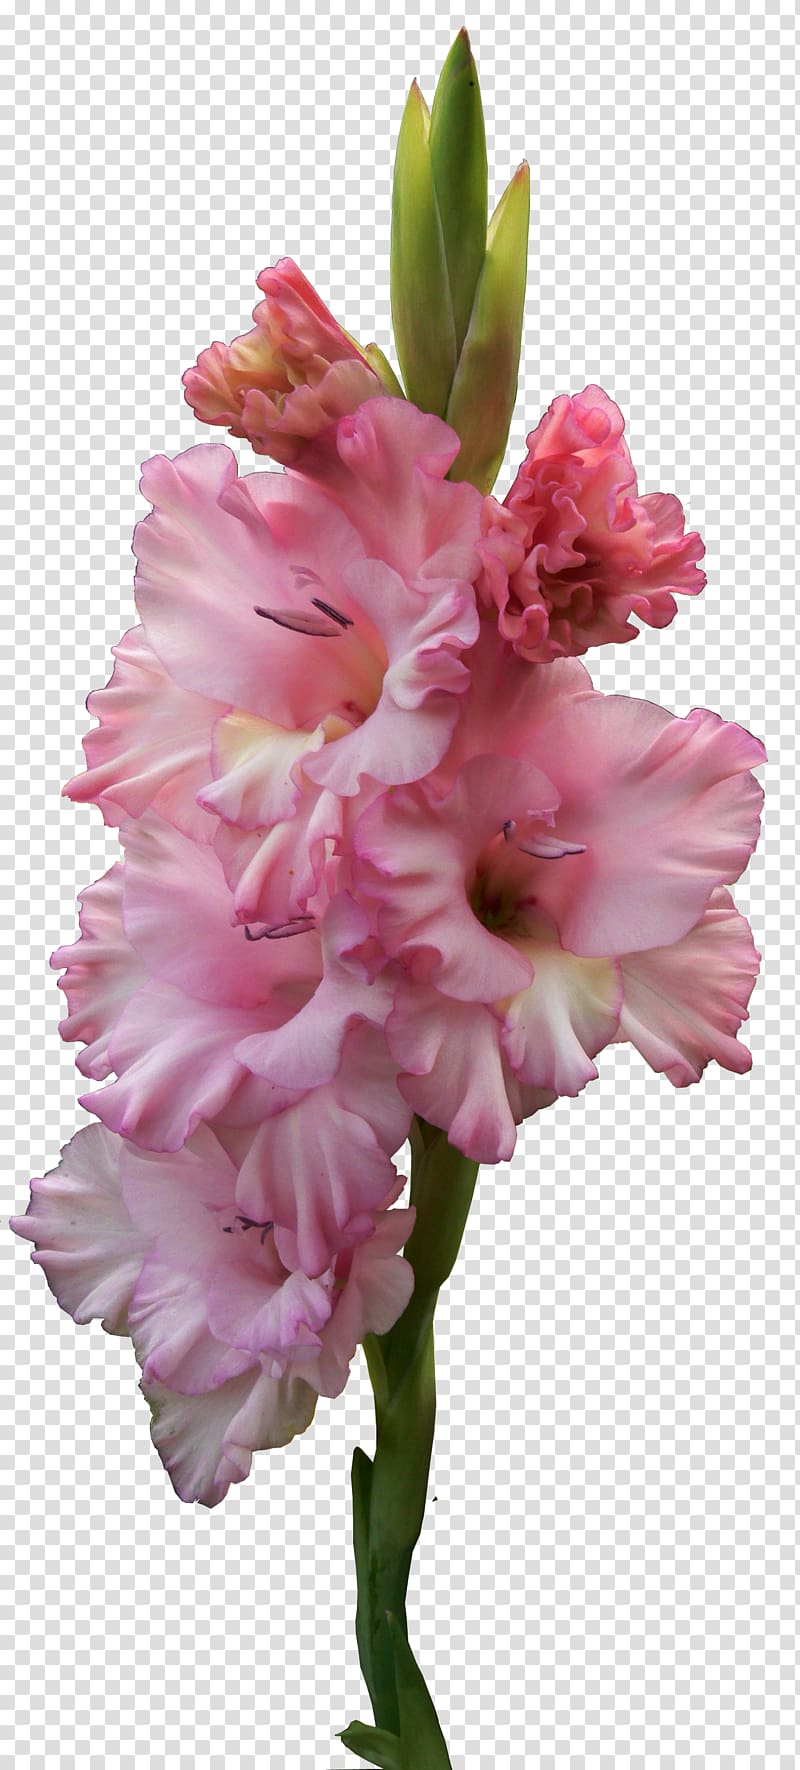 Flower , gladiolus transparent background PNG clipart